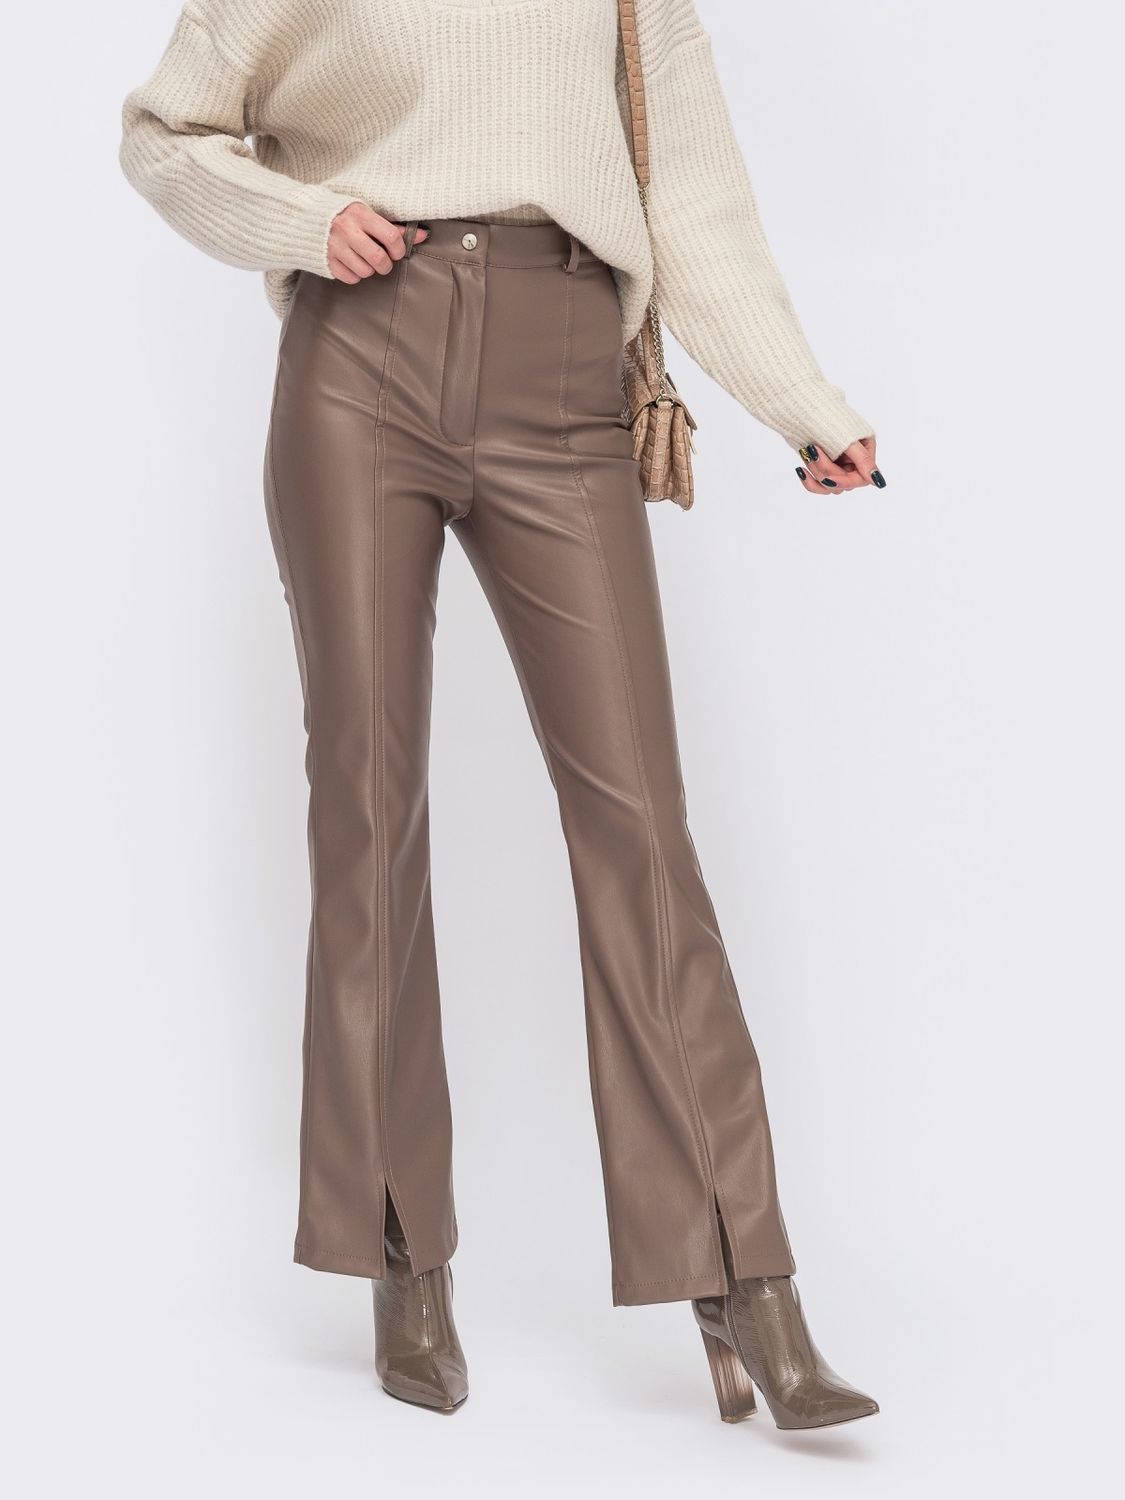 Кожаные брюки-клеш с высокой посадкой и разрезами спереди - фото